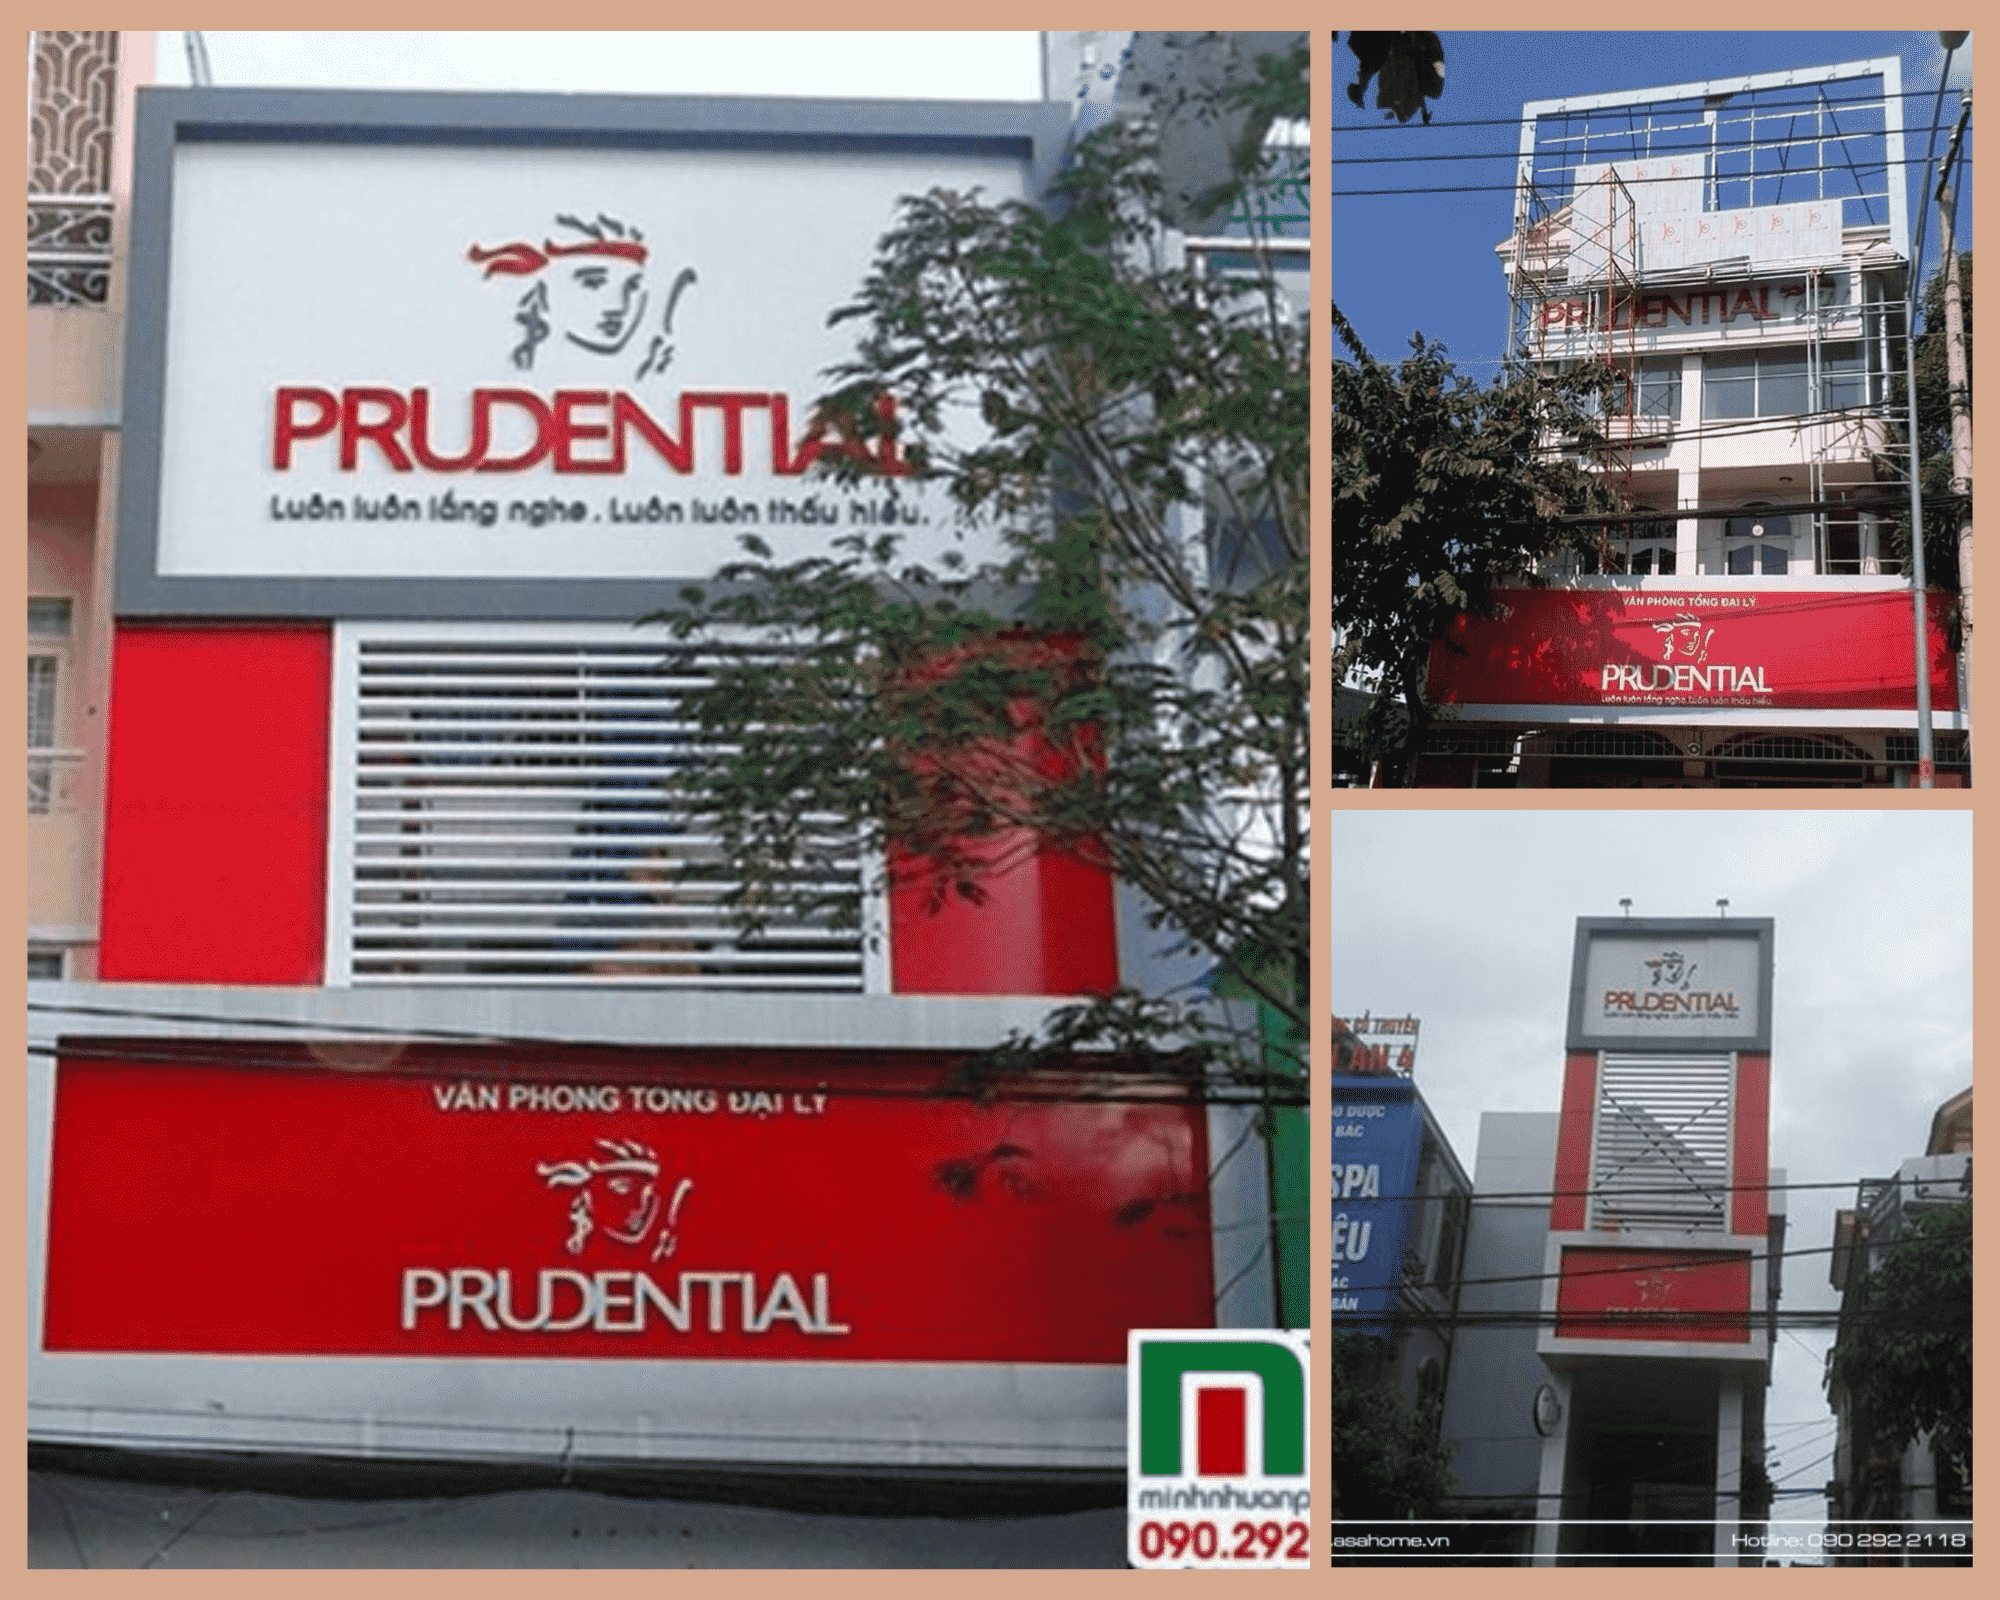 Minh Nhuận Phát thi công bảng biển quảng cáo cho hệ thống Prudential